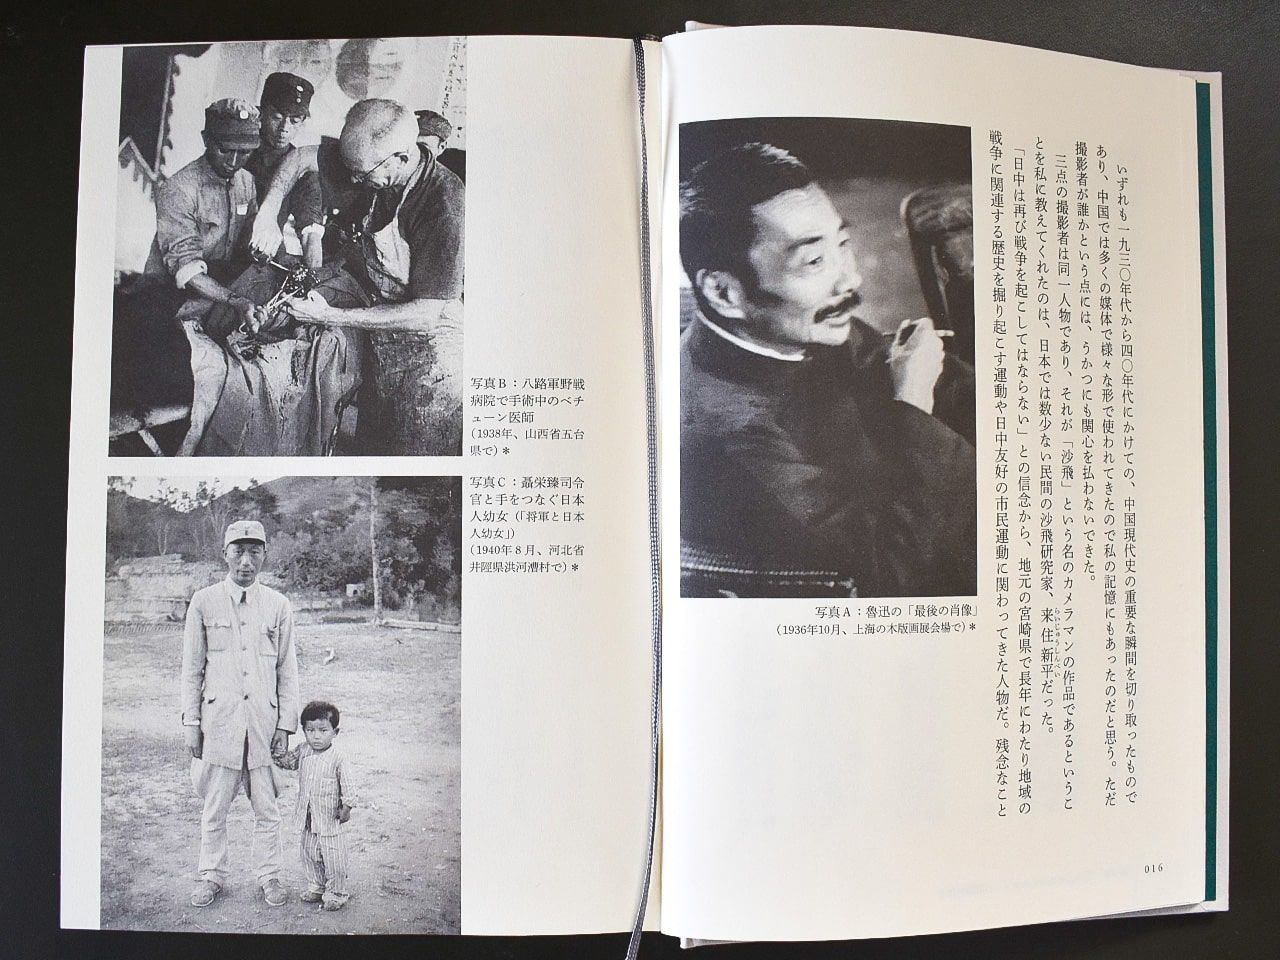 本書16-17ページに収められた沙飛の代表的な写真3葉。(右)魯迅の「最後の肖像」、(左上)八路軍野戦病院で手術中のベチューン医師、(左下)「将軍と日本人幼女」